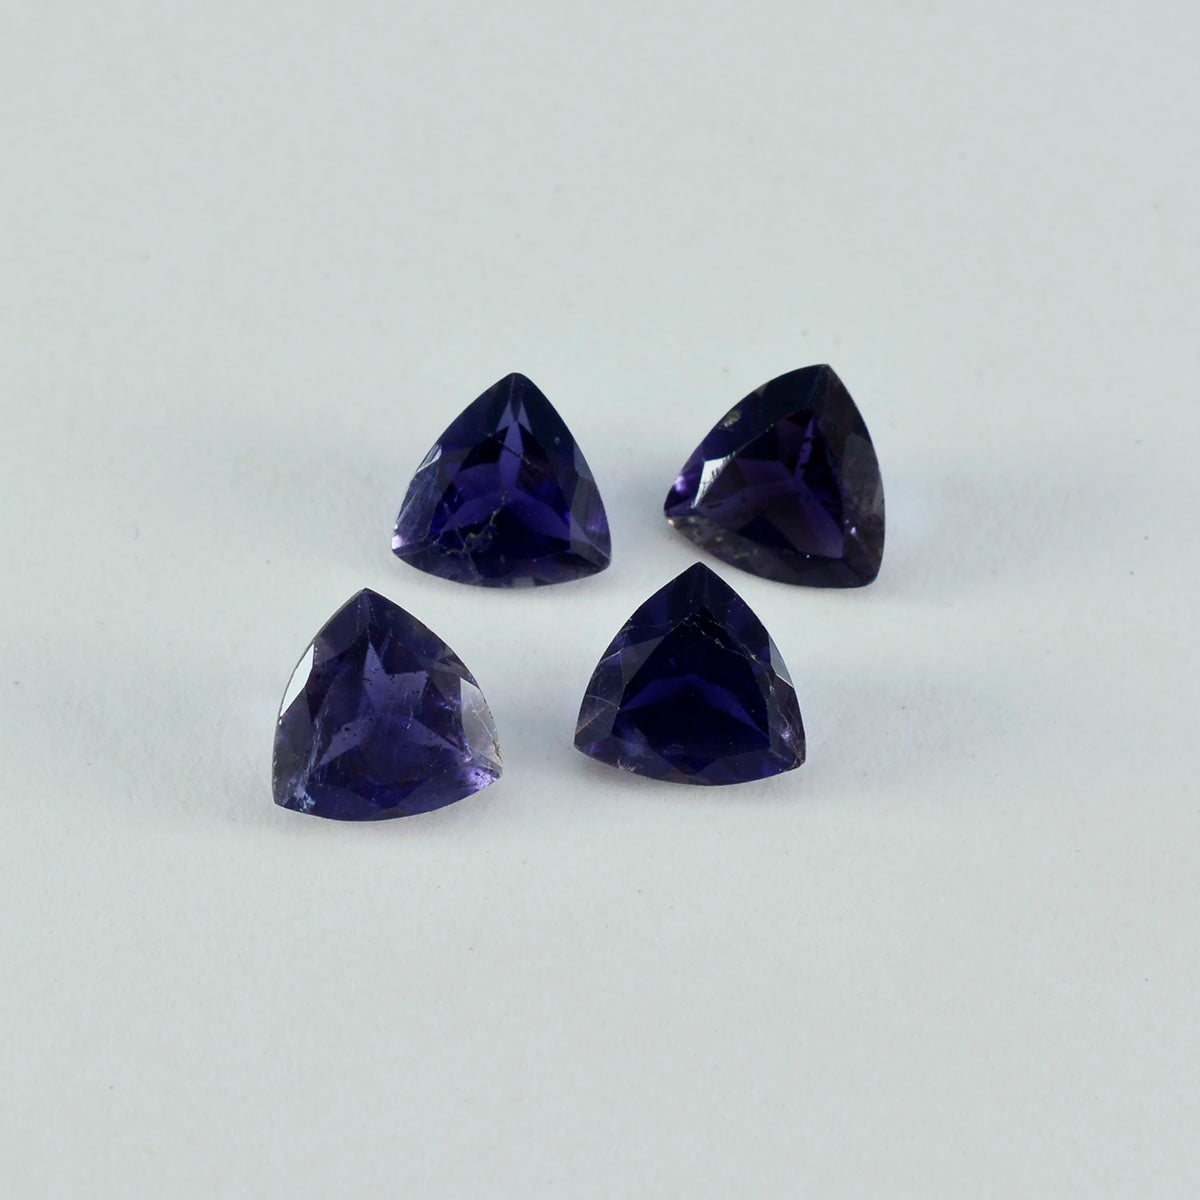 riyogems 1 шт. синий иолит граненый 14x14 мм форма триллион замечательное качество свободный камень